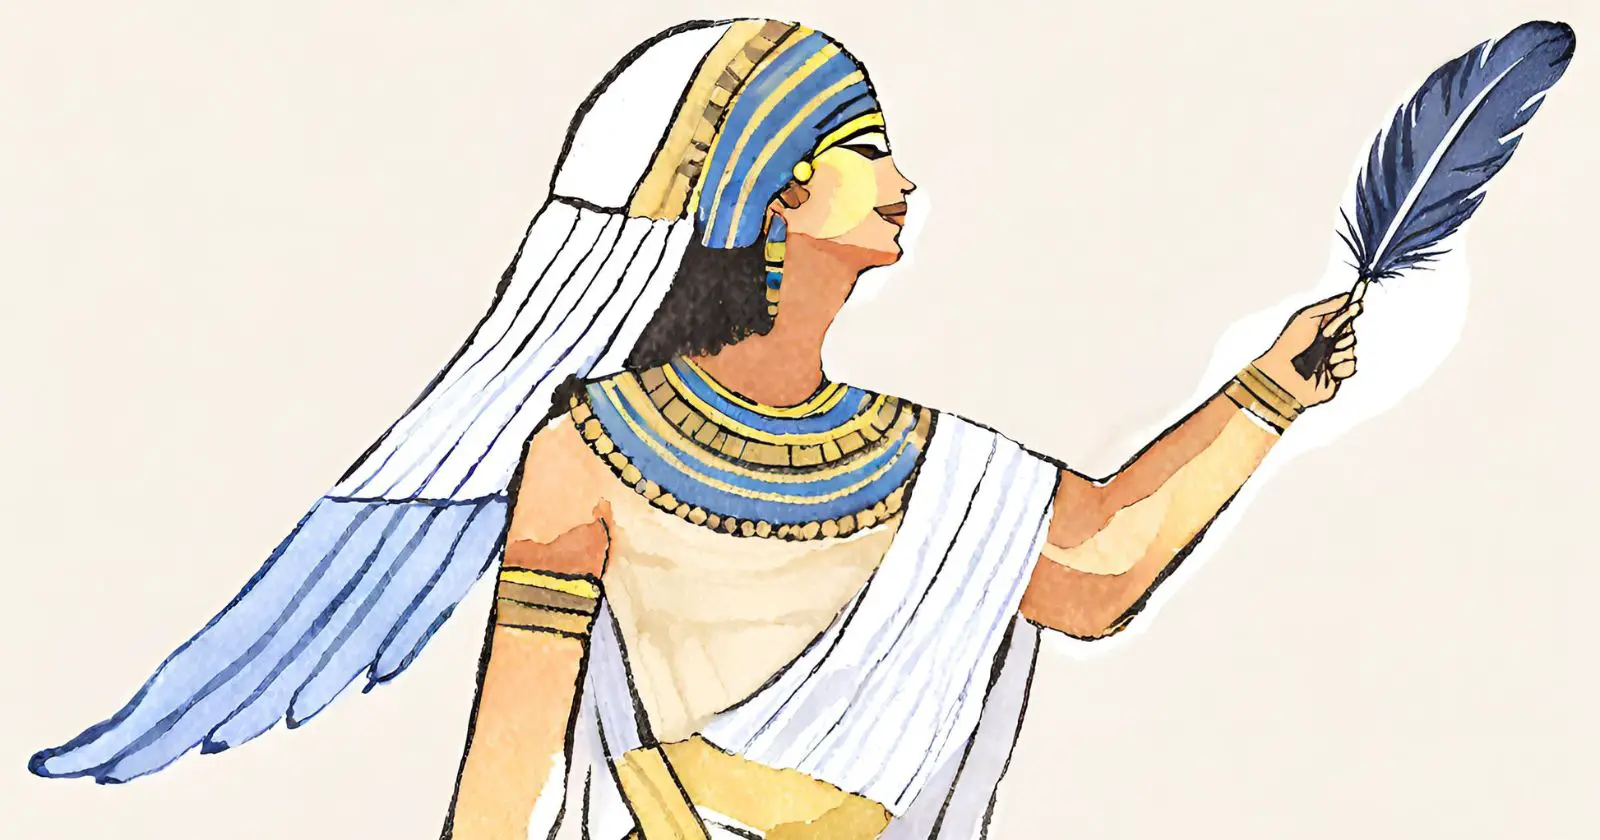 Maat A Deusa Egípcia da Justiça